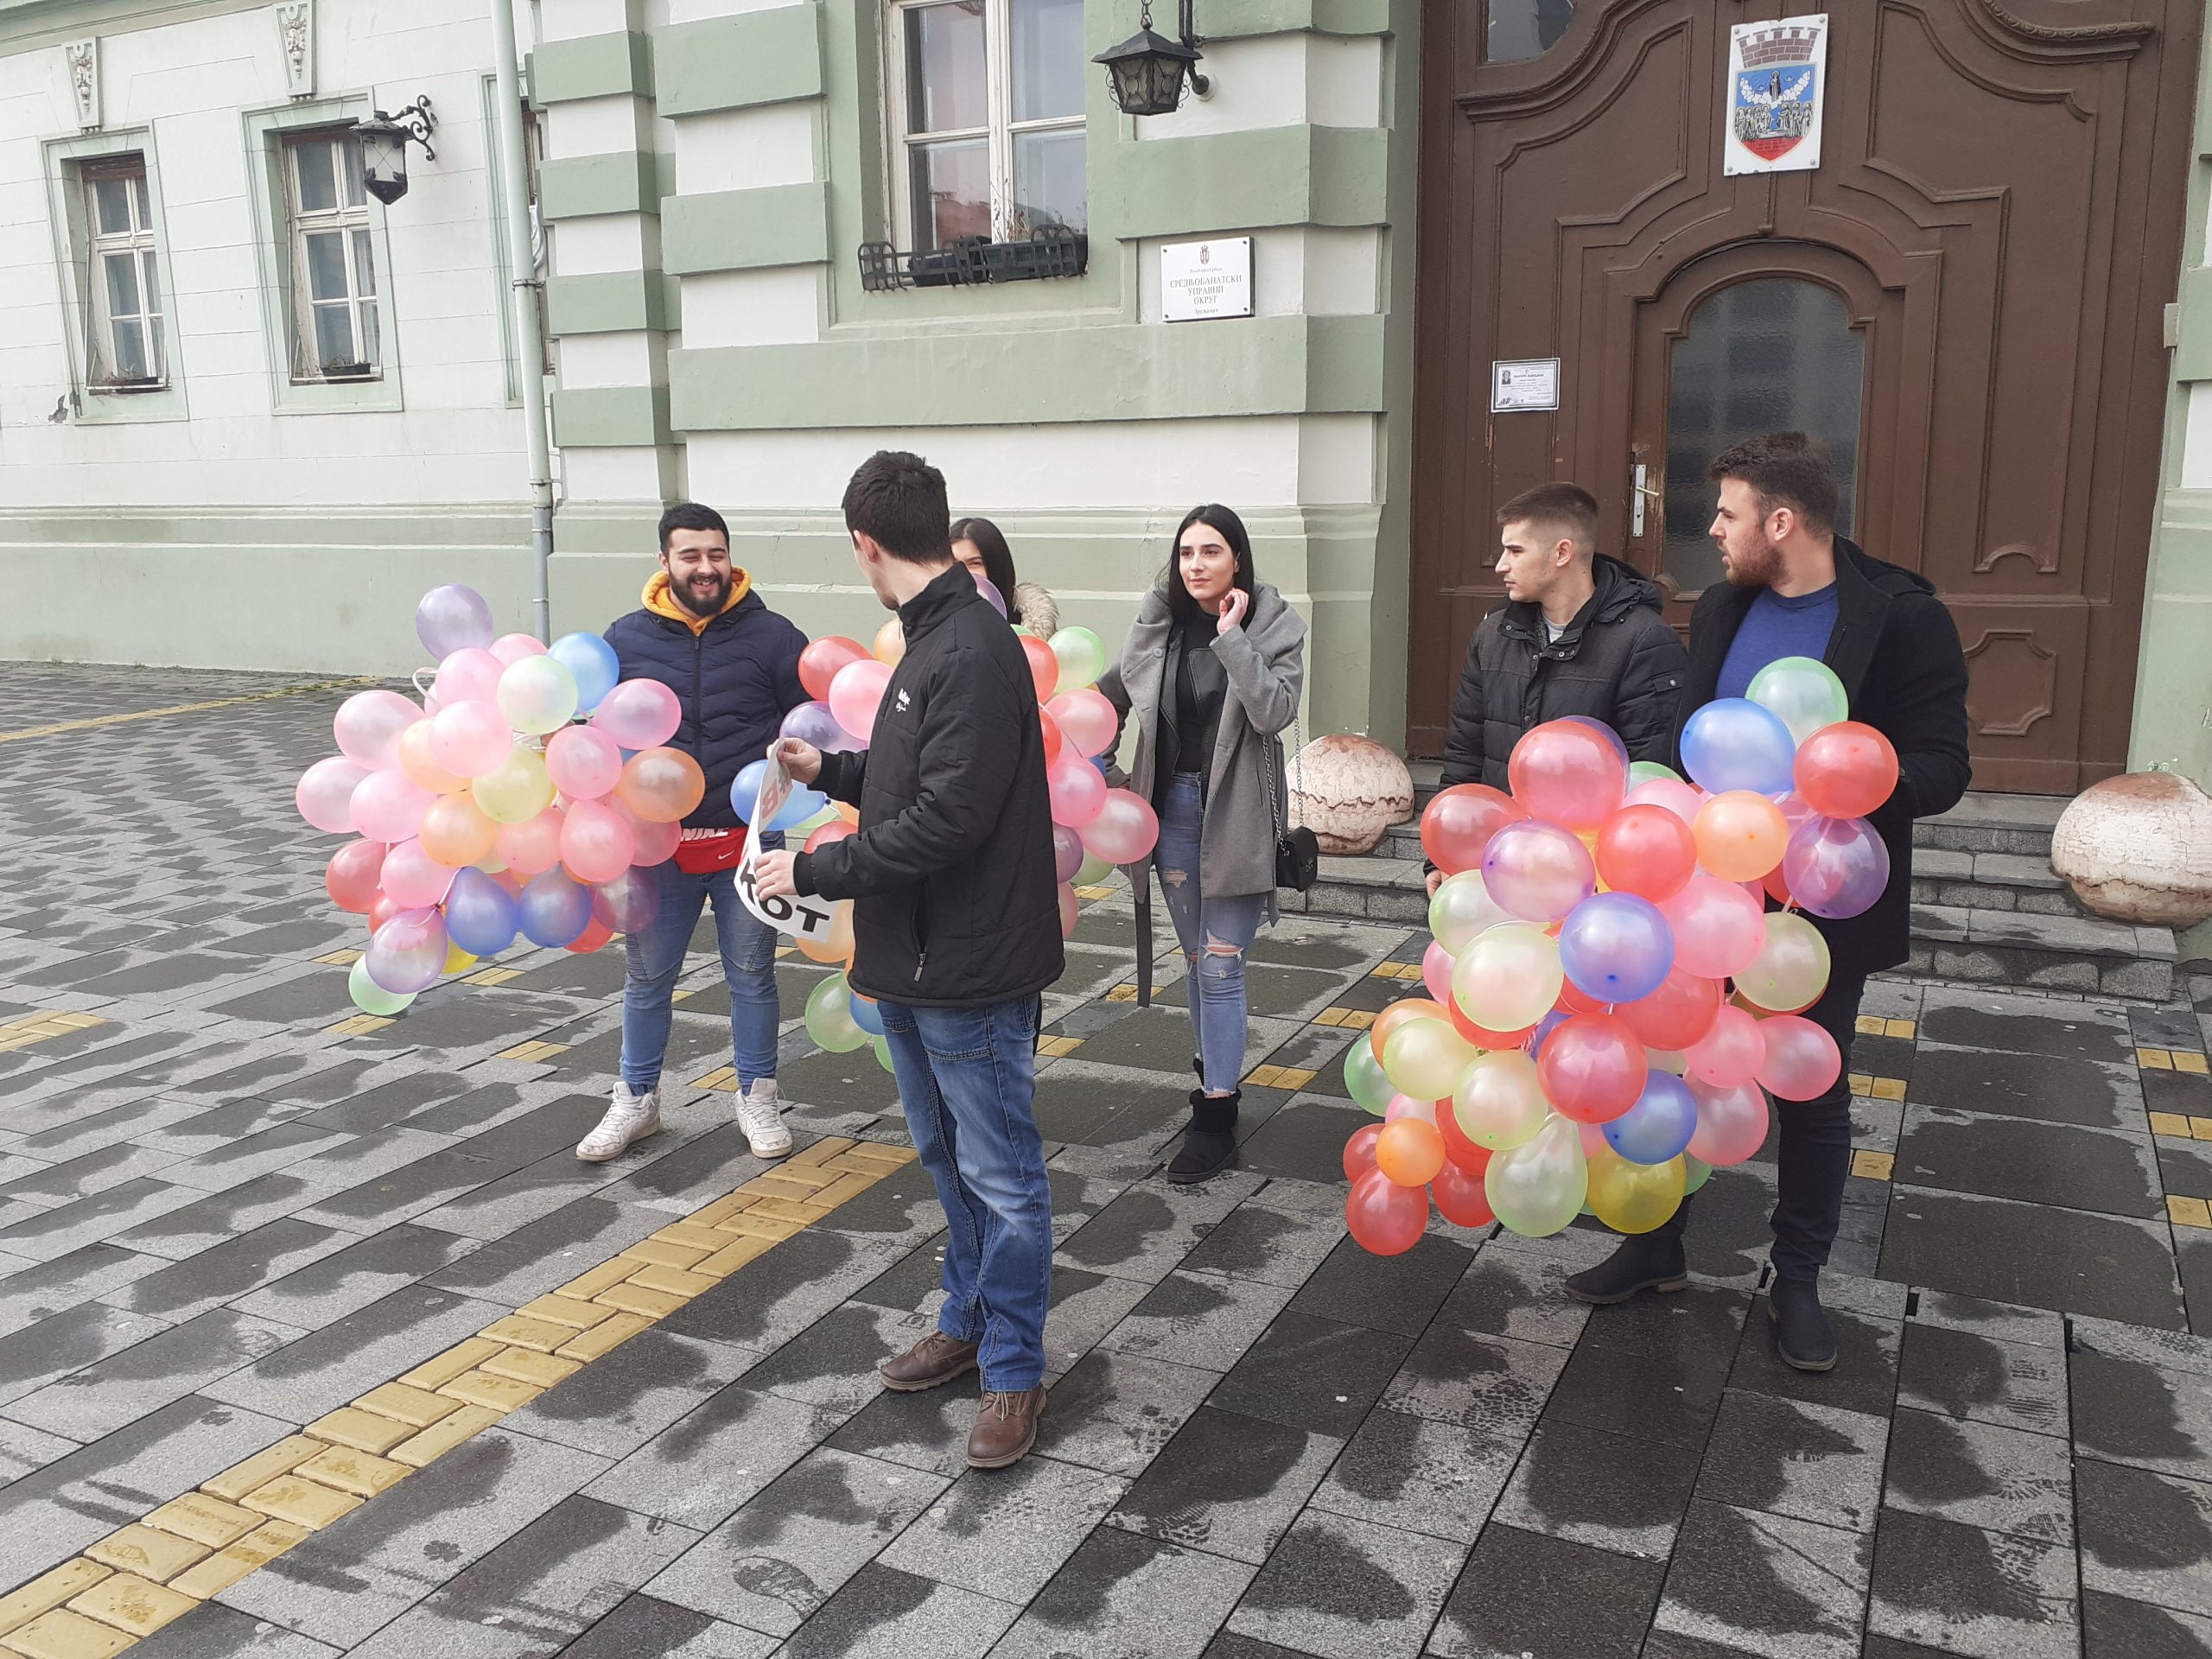 Mladi SSP izveli akciju "150 balona za 150 ljudi koji napuste Zrenjanin i Srbiju" 1